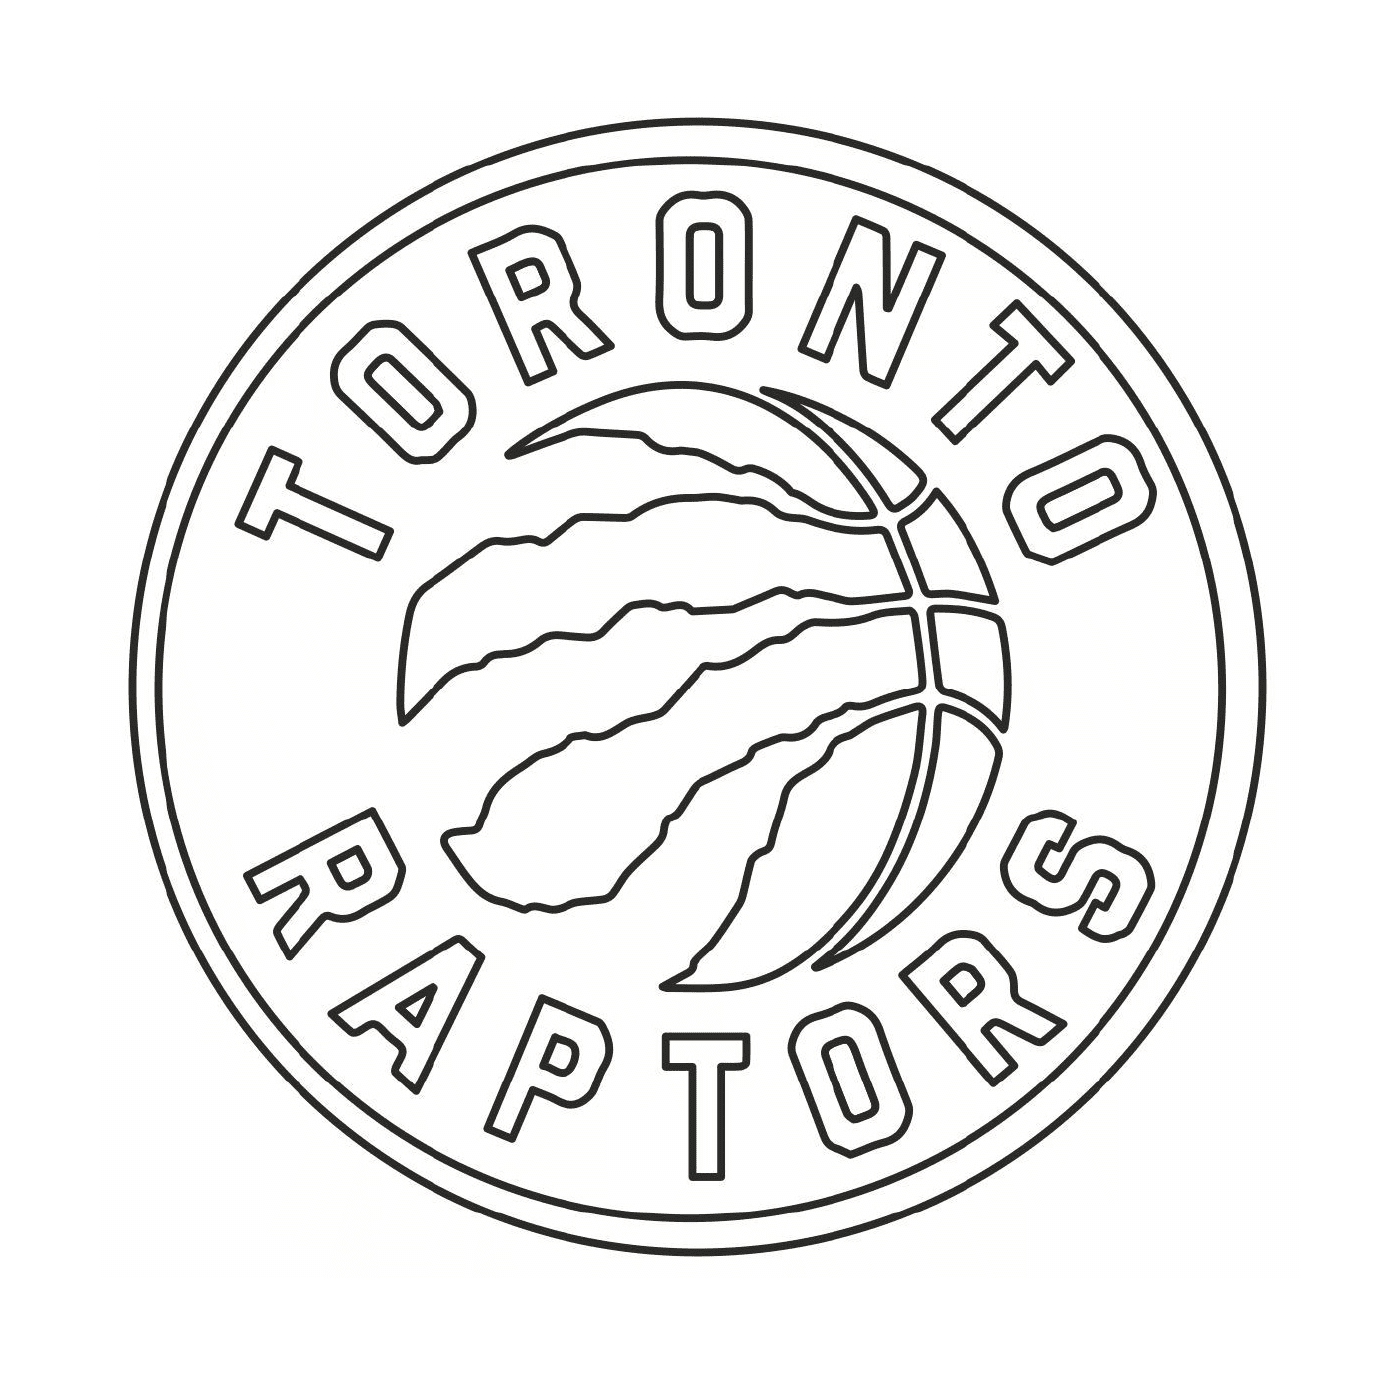  多伦多猛禽组织标志、篮球队 